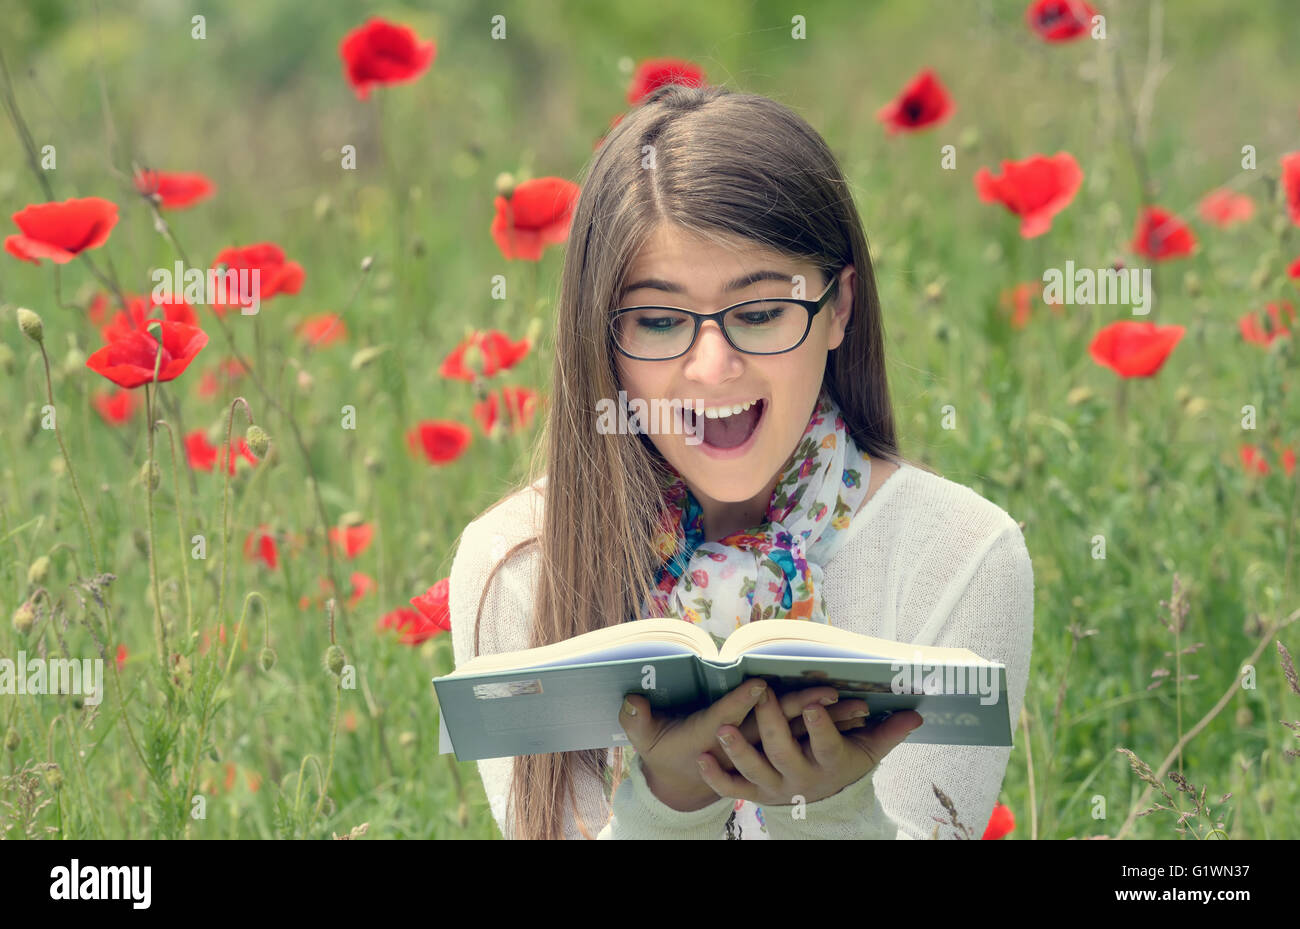 Teenage girl lire un livre en champ de coquelicots Banque D'Images